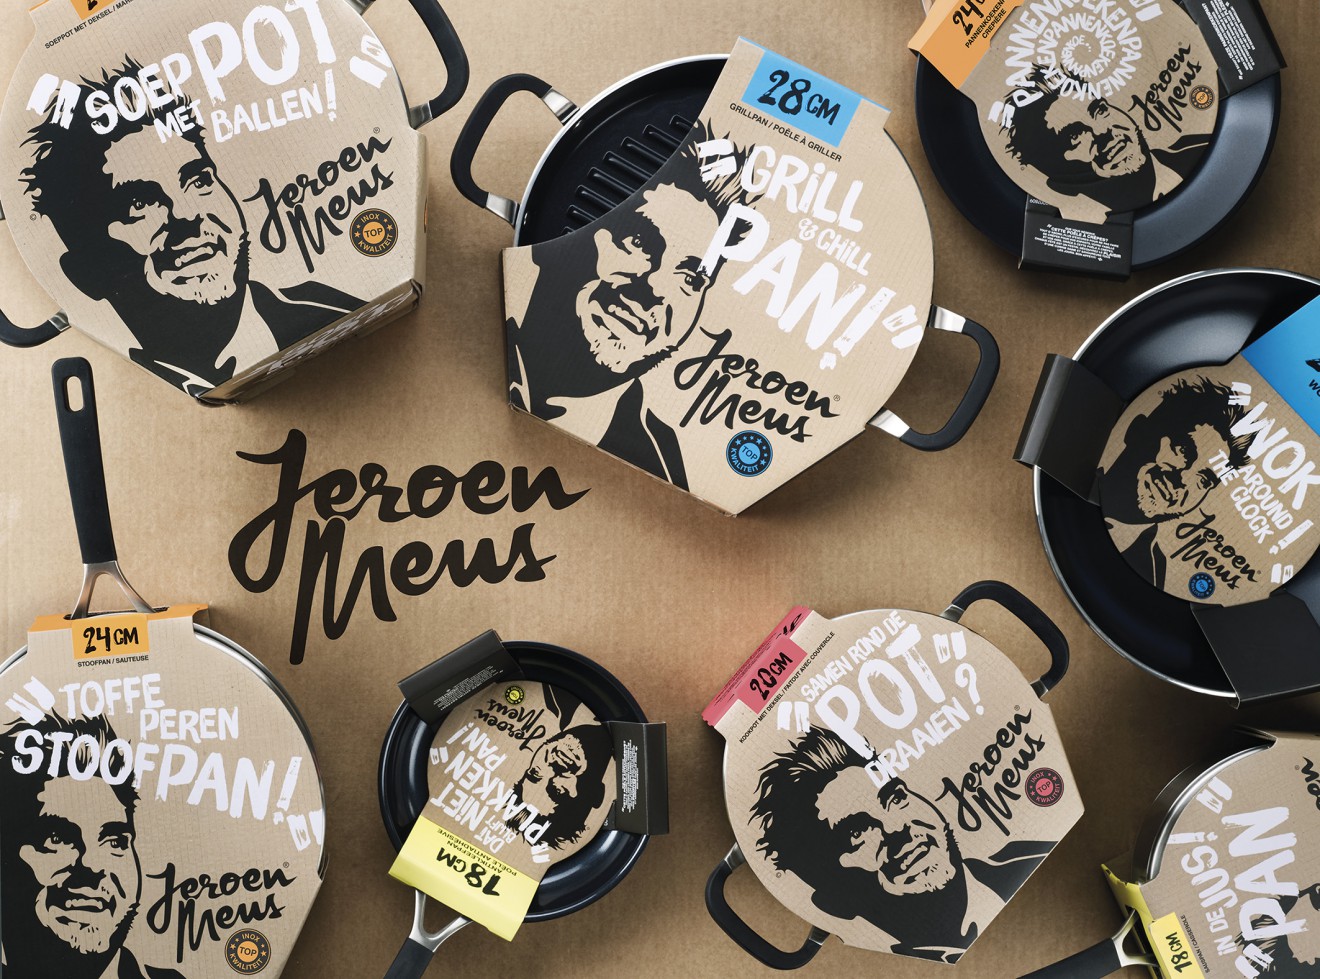 Lenen Blootstellen intellectueel Jeroen Meus - Golden Pentaward - A 'personality' branded range of pots and  pans